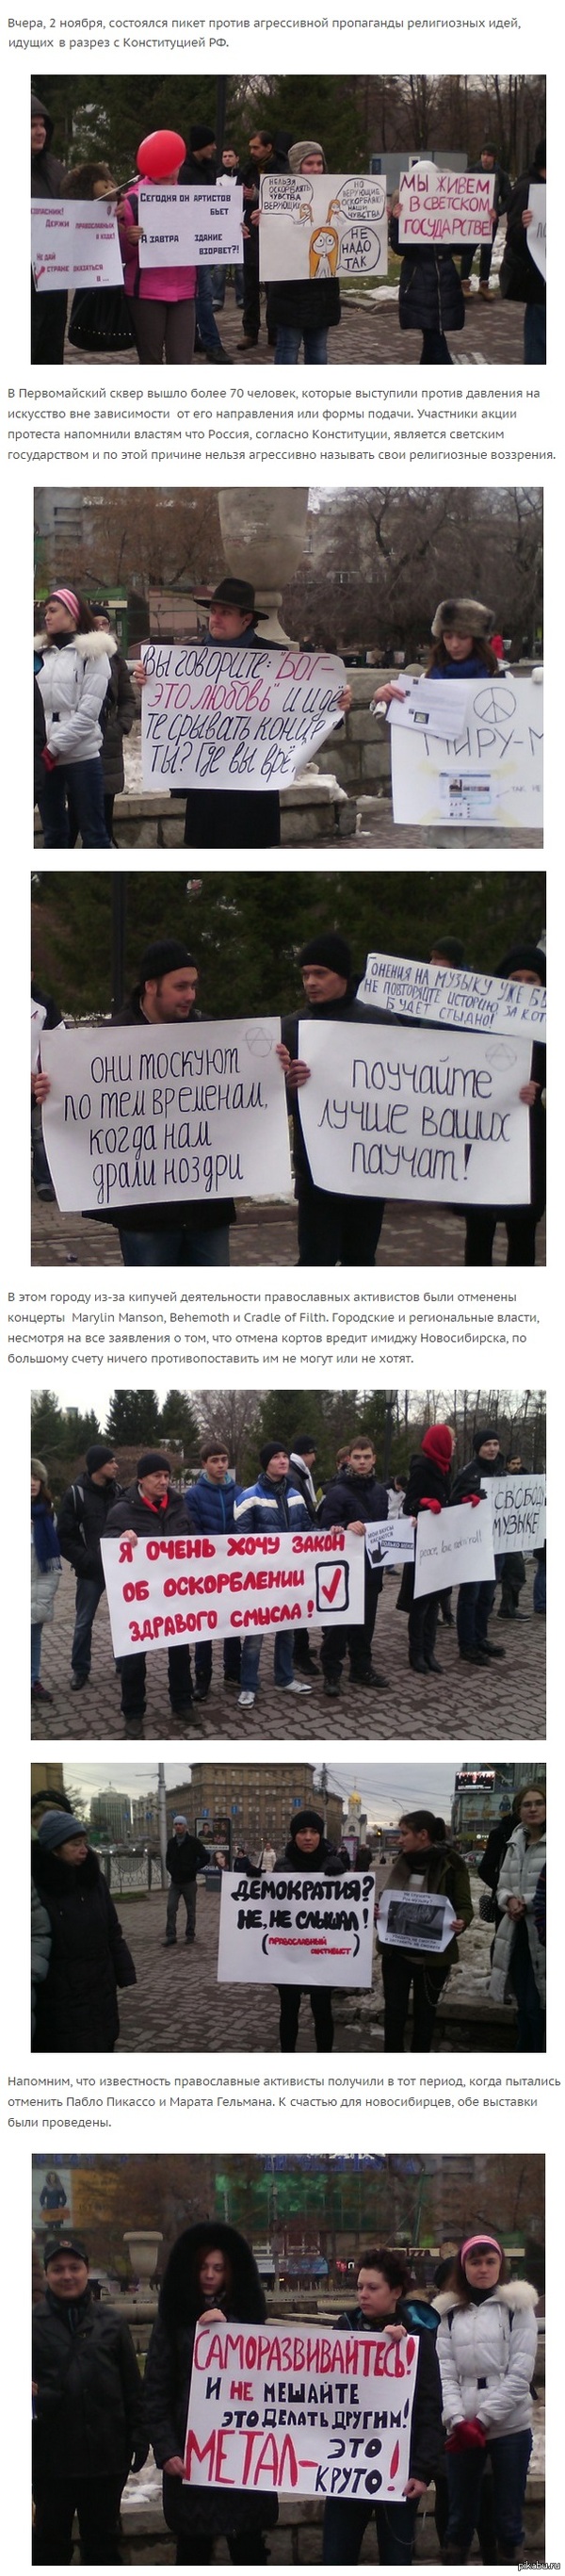        http://sovok.info/novosibirtsy-vyshli-na-piket-protiv-pravoslavnyh-aktivistov/